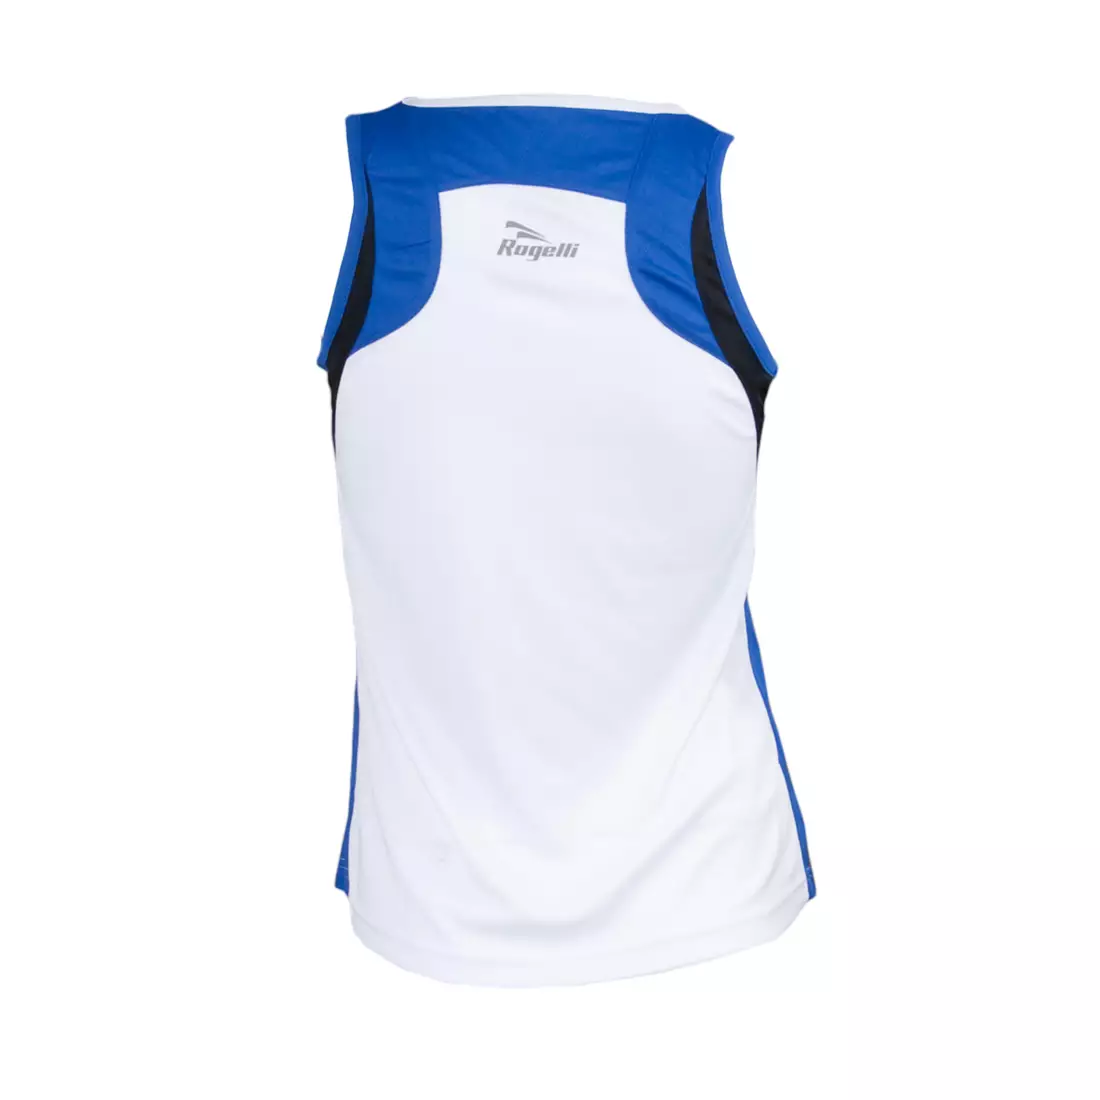 ROGELLI RUN ESTY - ultra-light women's sports T-shirt, sleeveless